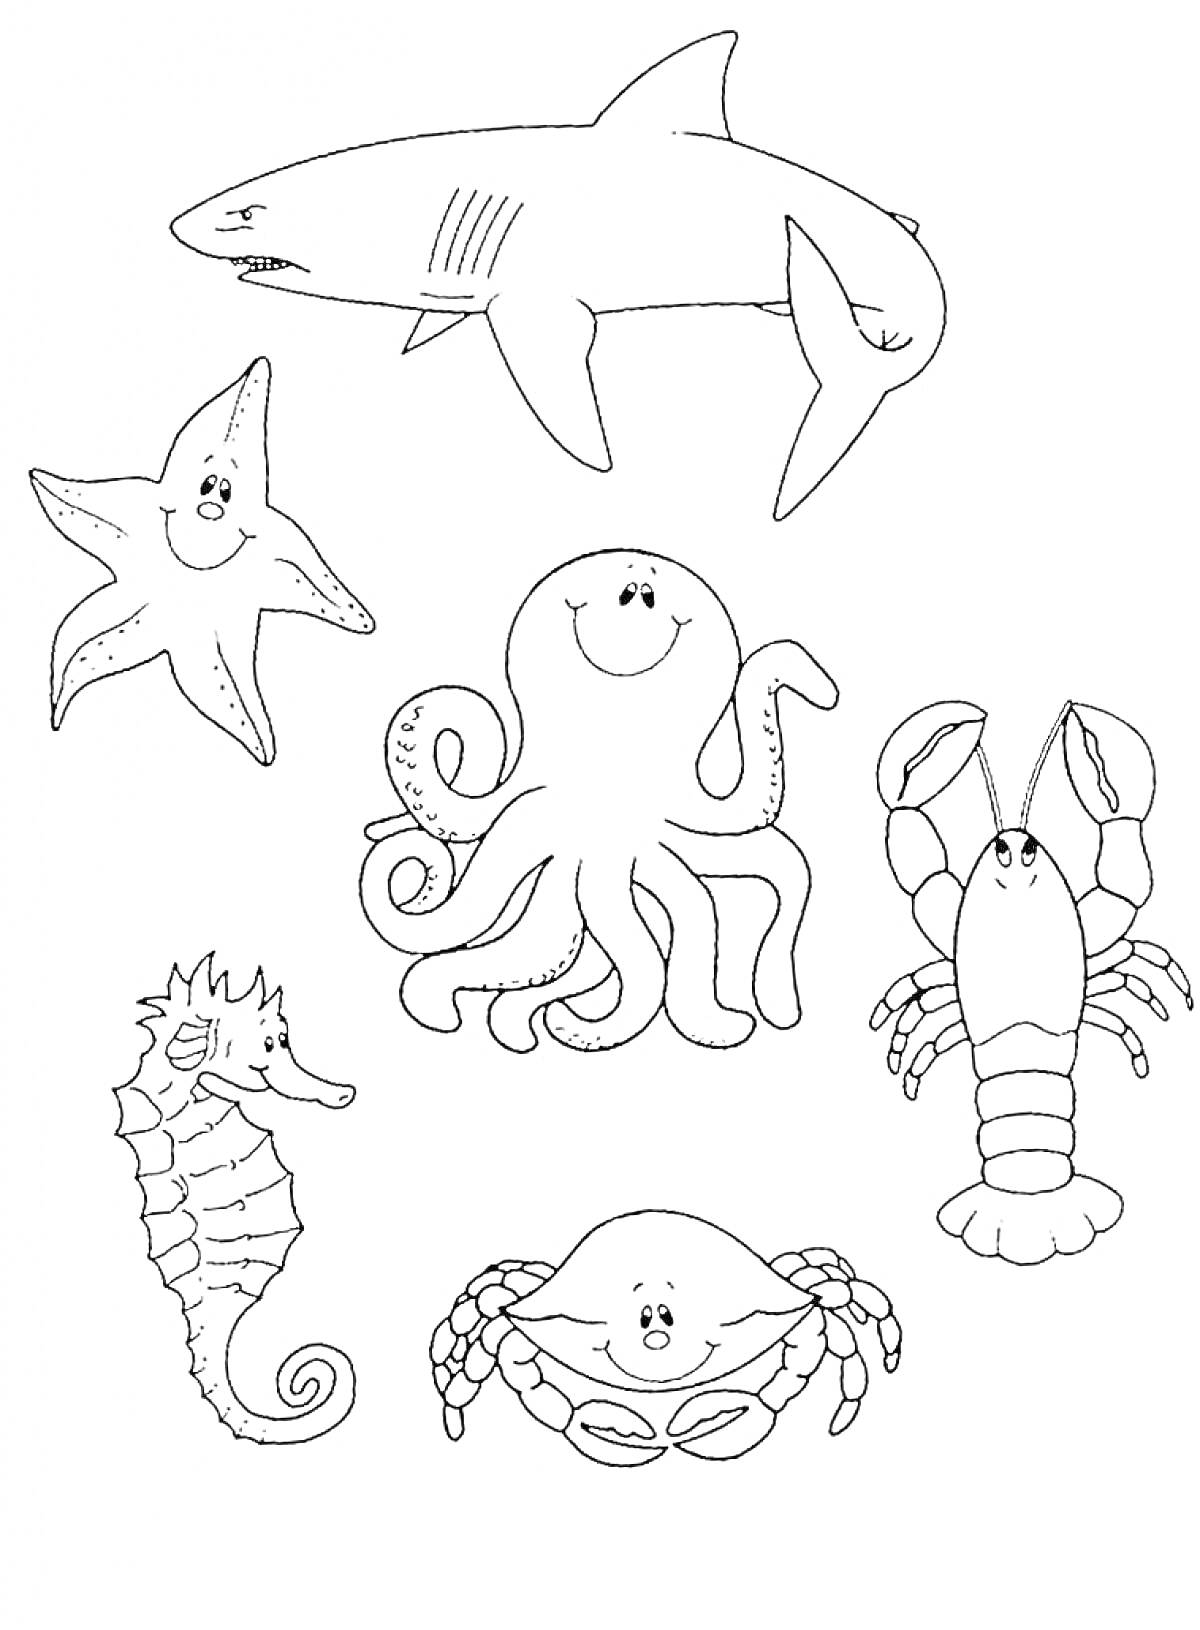 Раскраска Морские обитатели: акула, морская звезда, осьминог, омар, морской конёк, краб